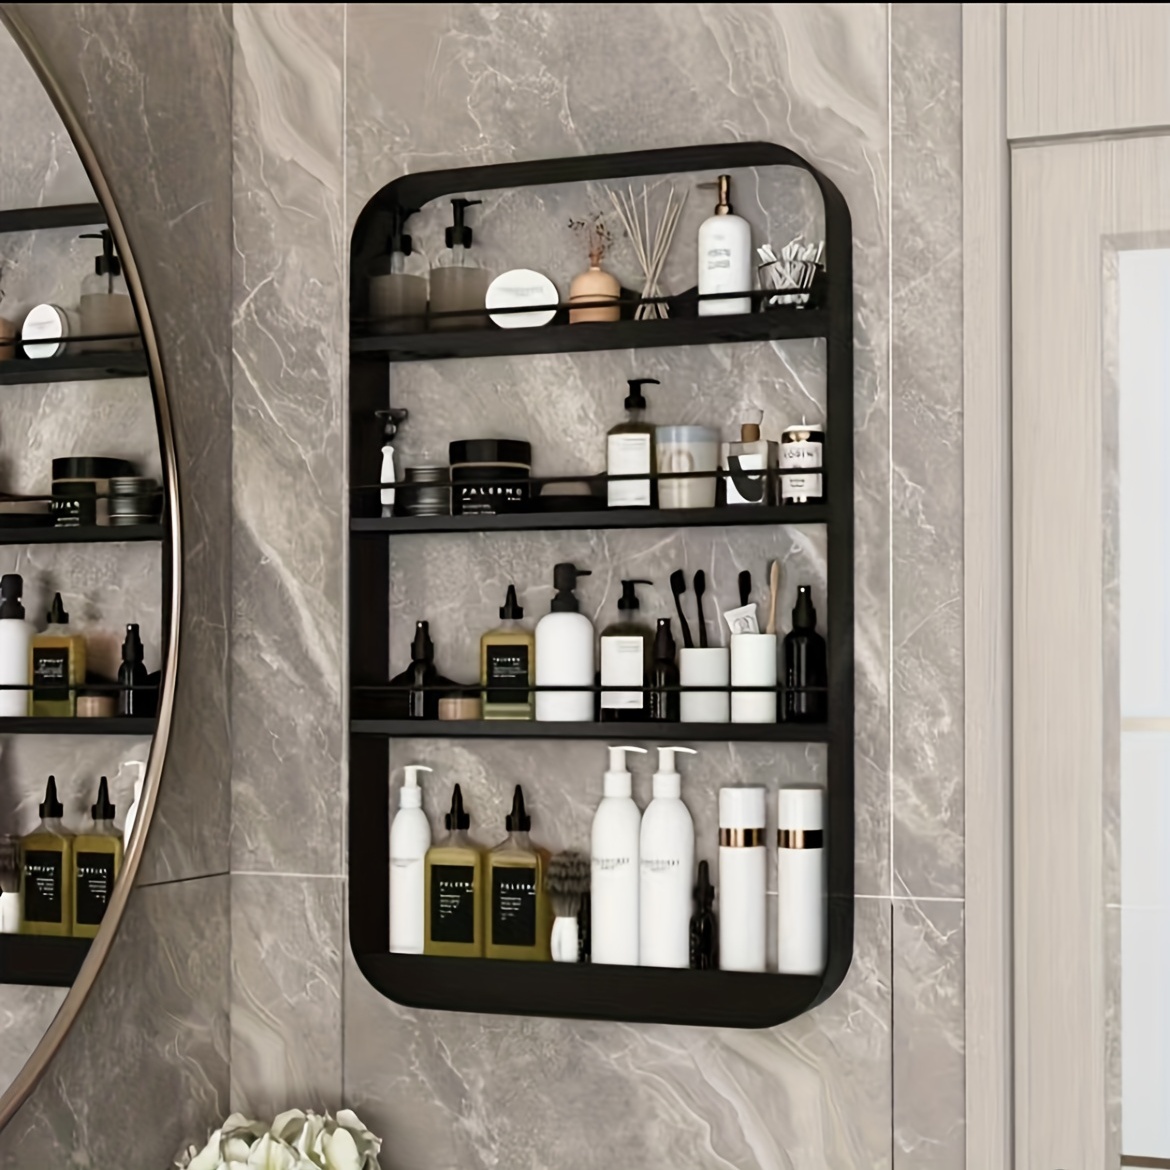 Wall Mounted Bathroom Shelf - Easy Installation, Organized